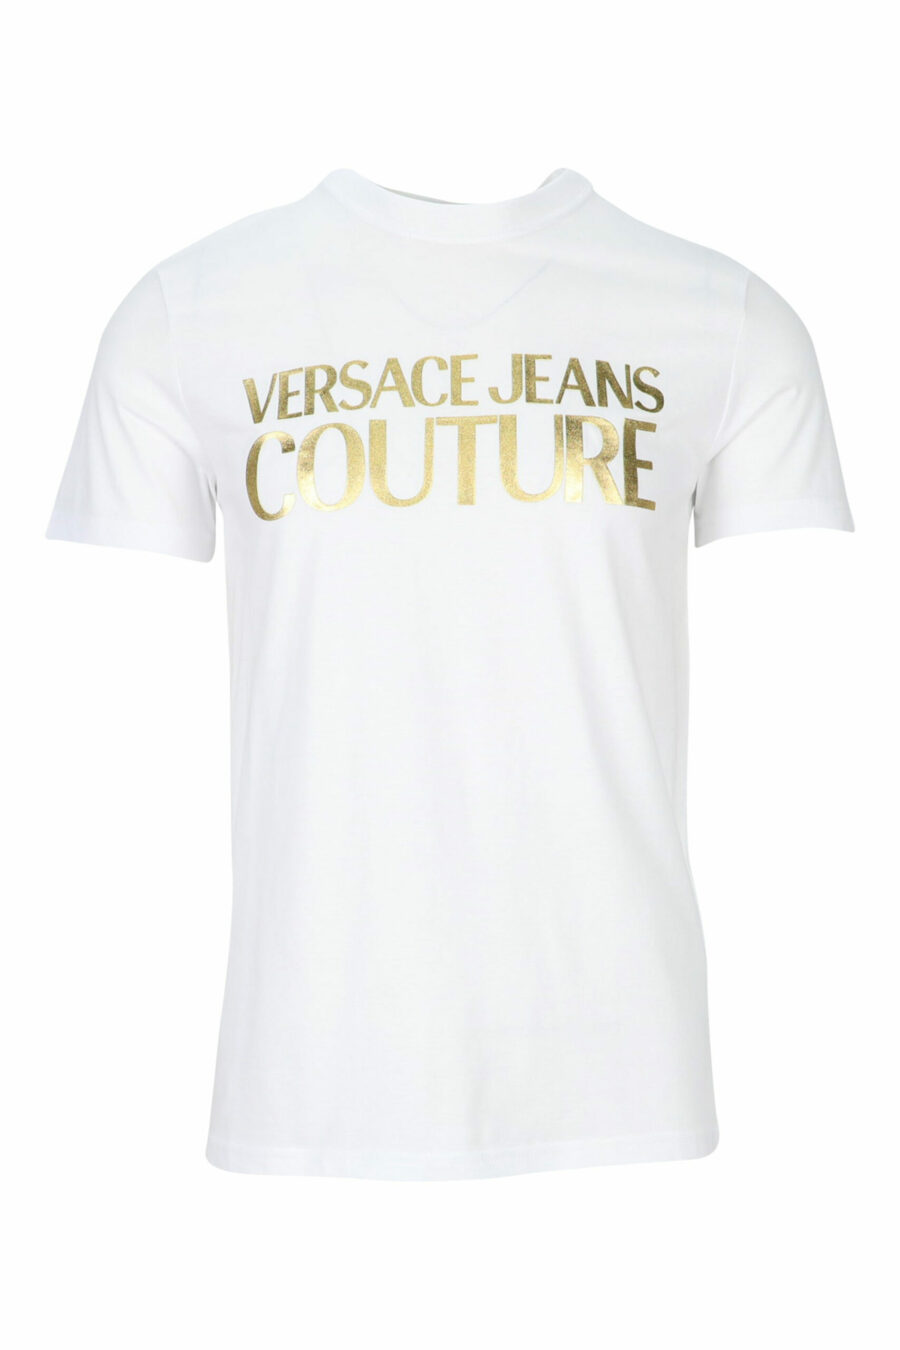 T-shirt branca com maxilogue clássico dourado brilhante - 8052019456738 scaled